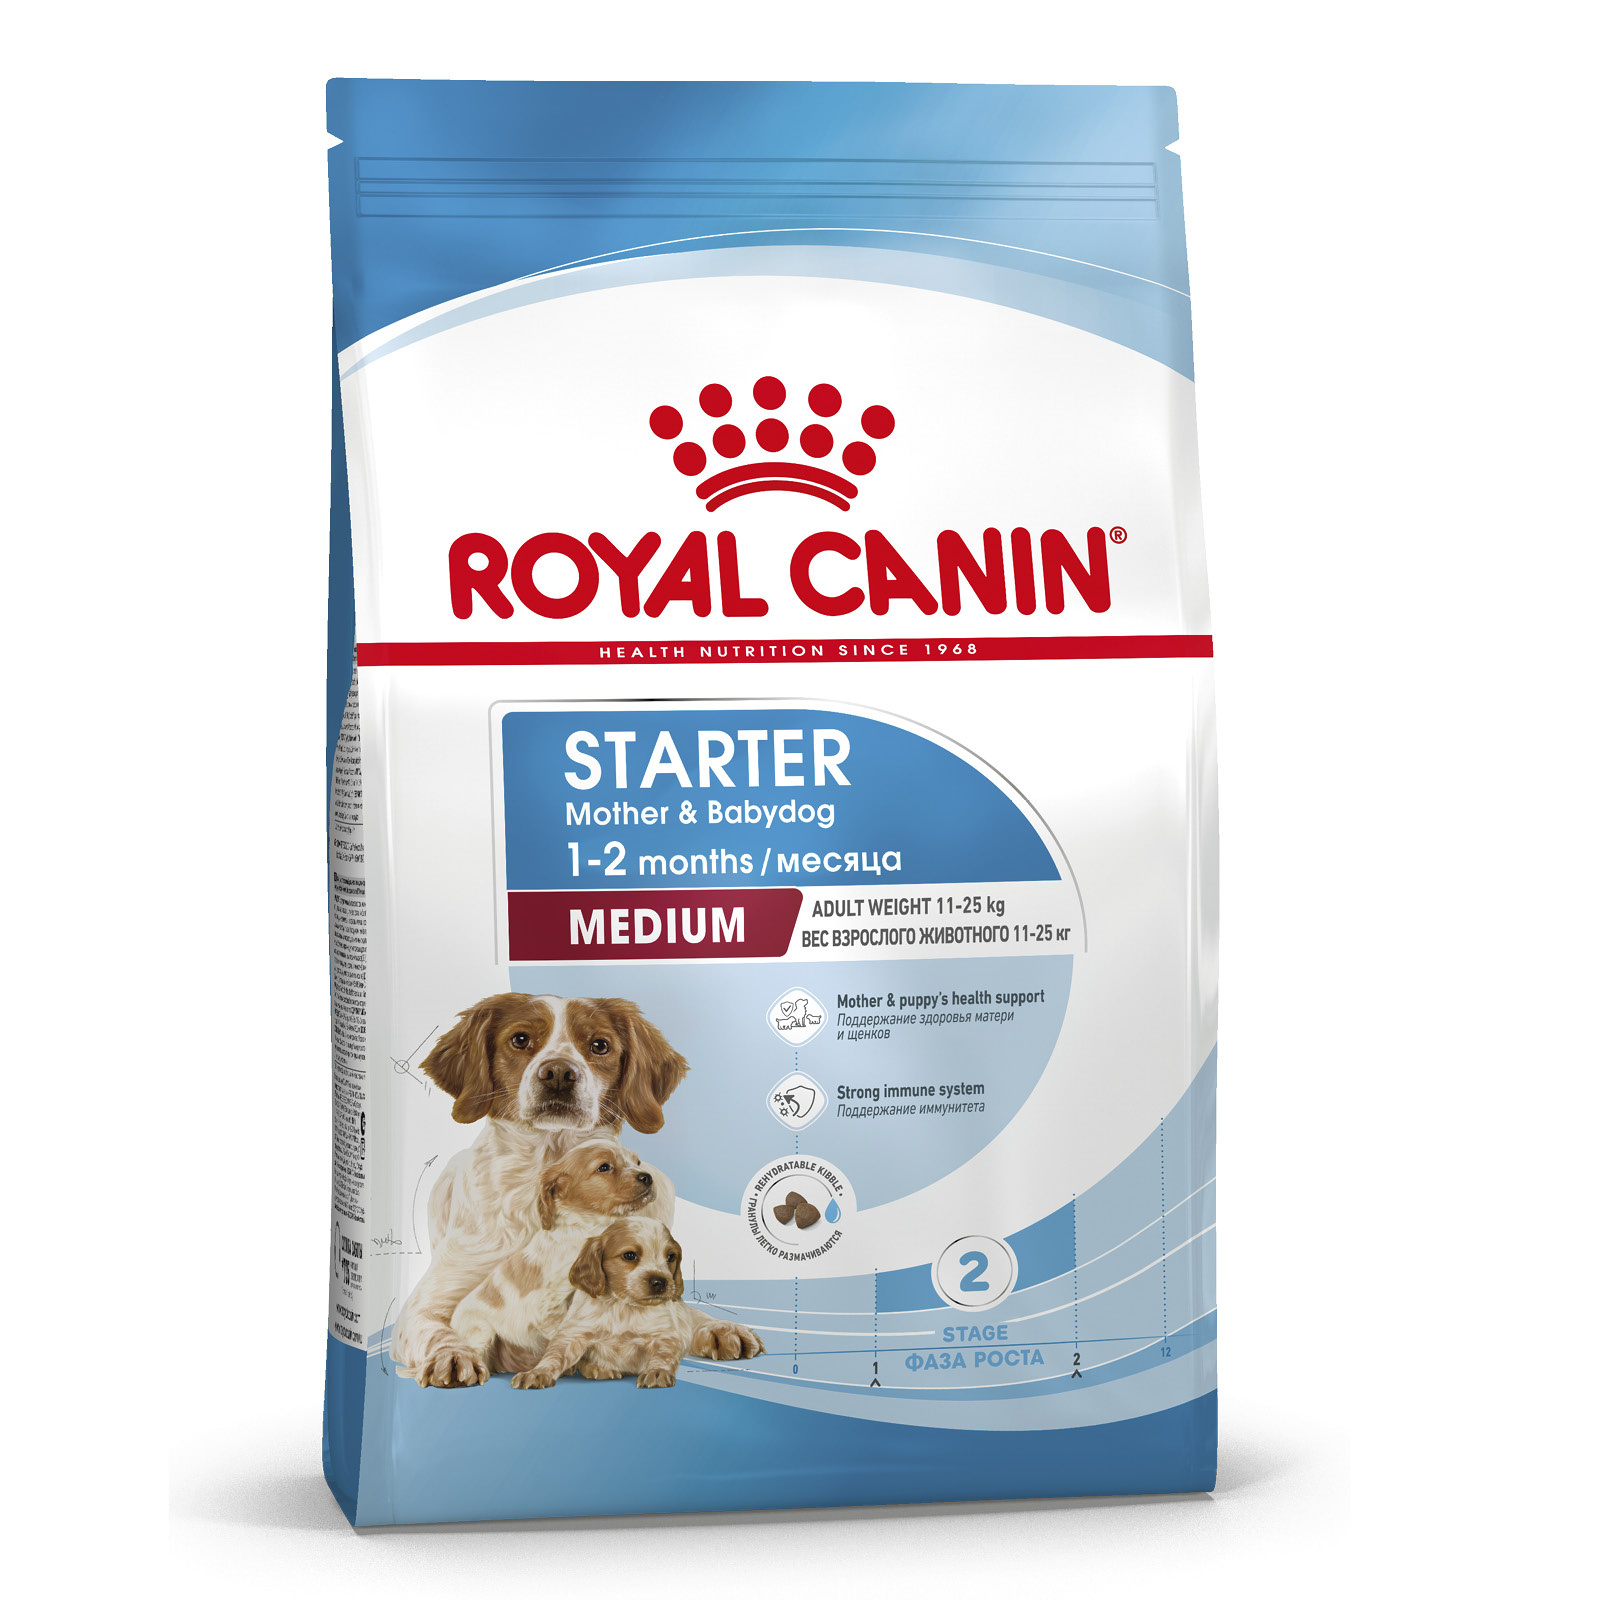 Royal Canin Корм Royal Canin для щенков средних пород от 3 недель до 2 месяцев, беременных и кормящих сук (12 кг)